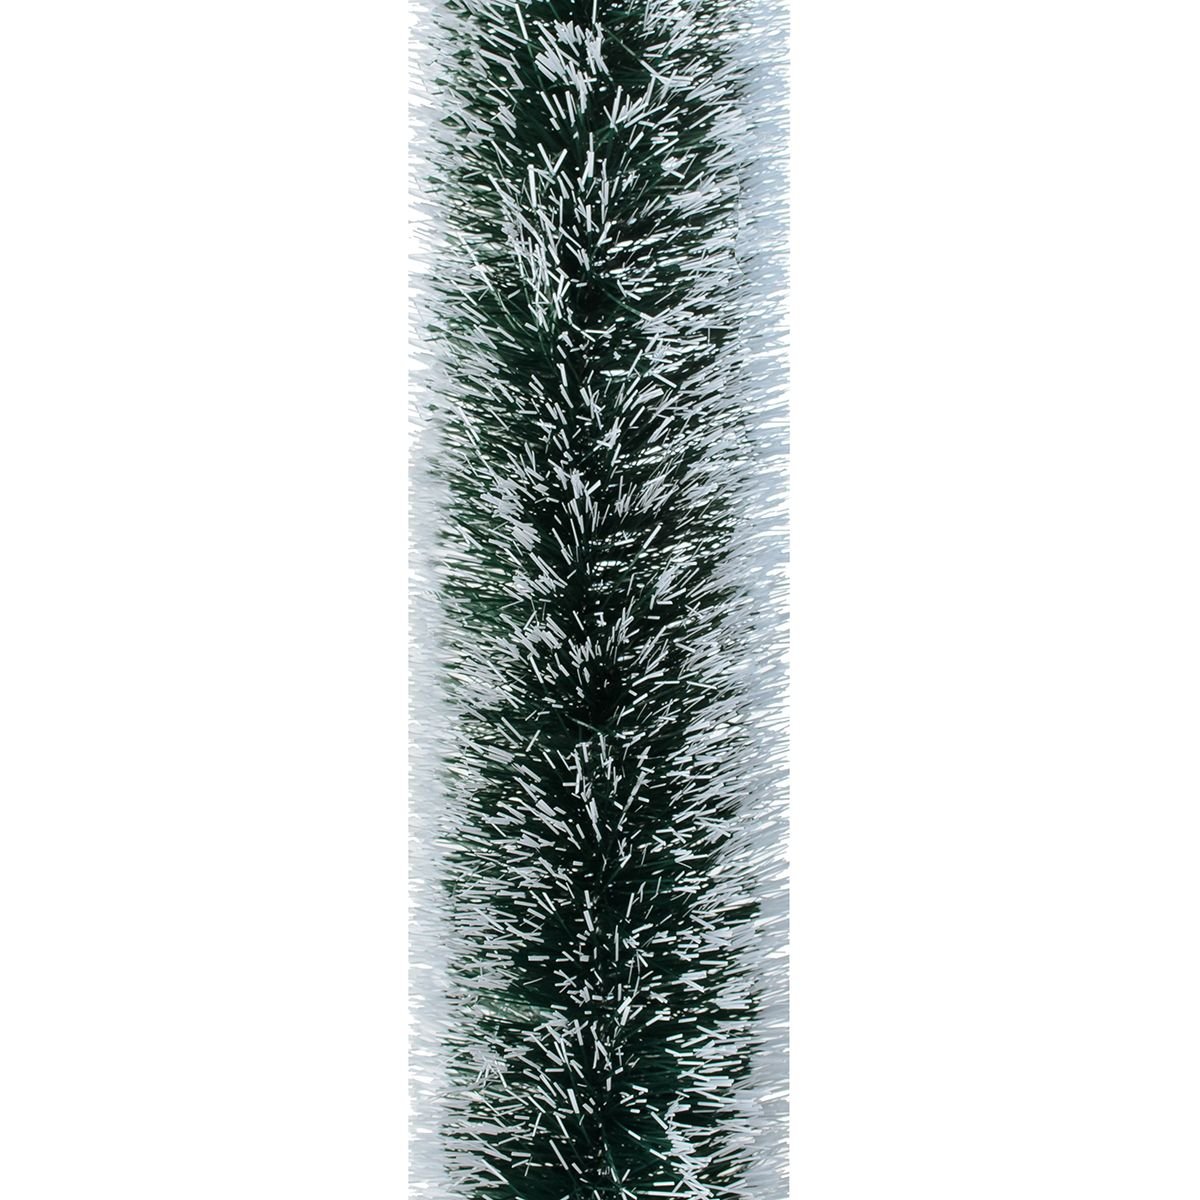 Мішура Novogod'ko 10 см 3 м зелена з білими кінчиками (980324) - фото 1